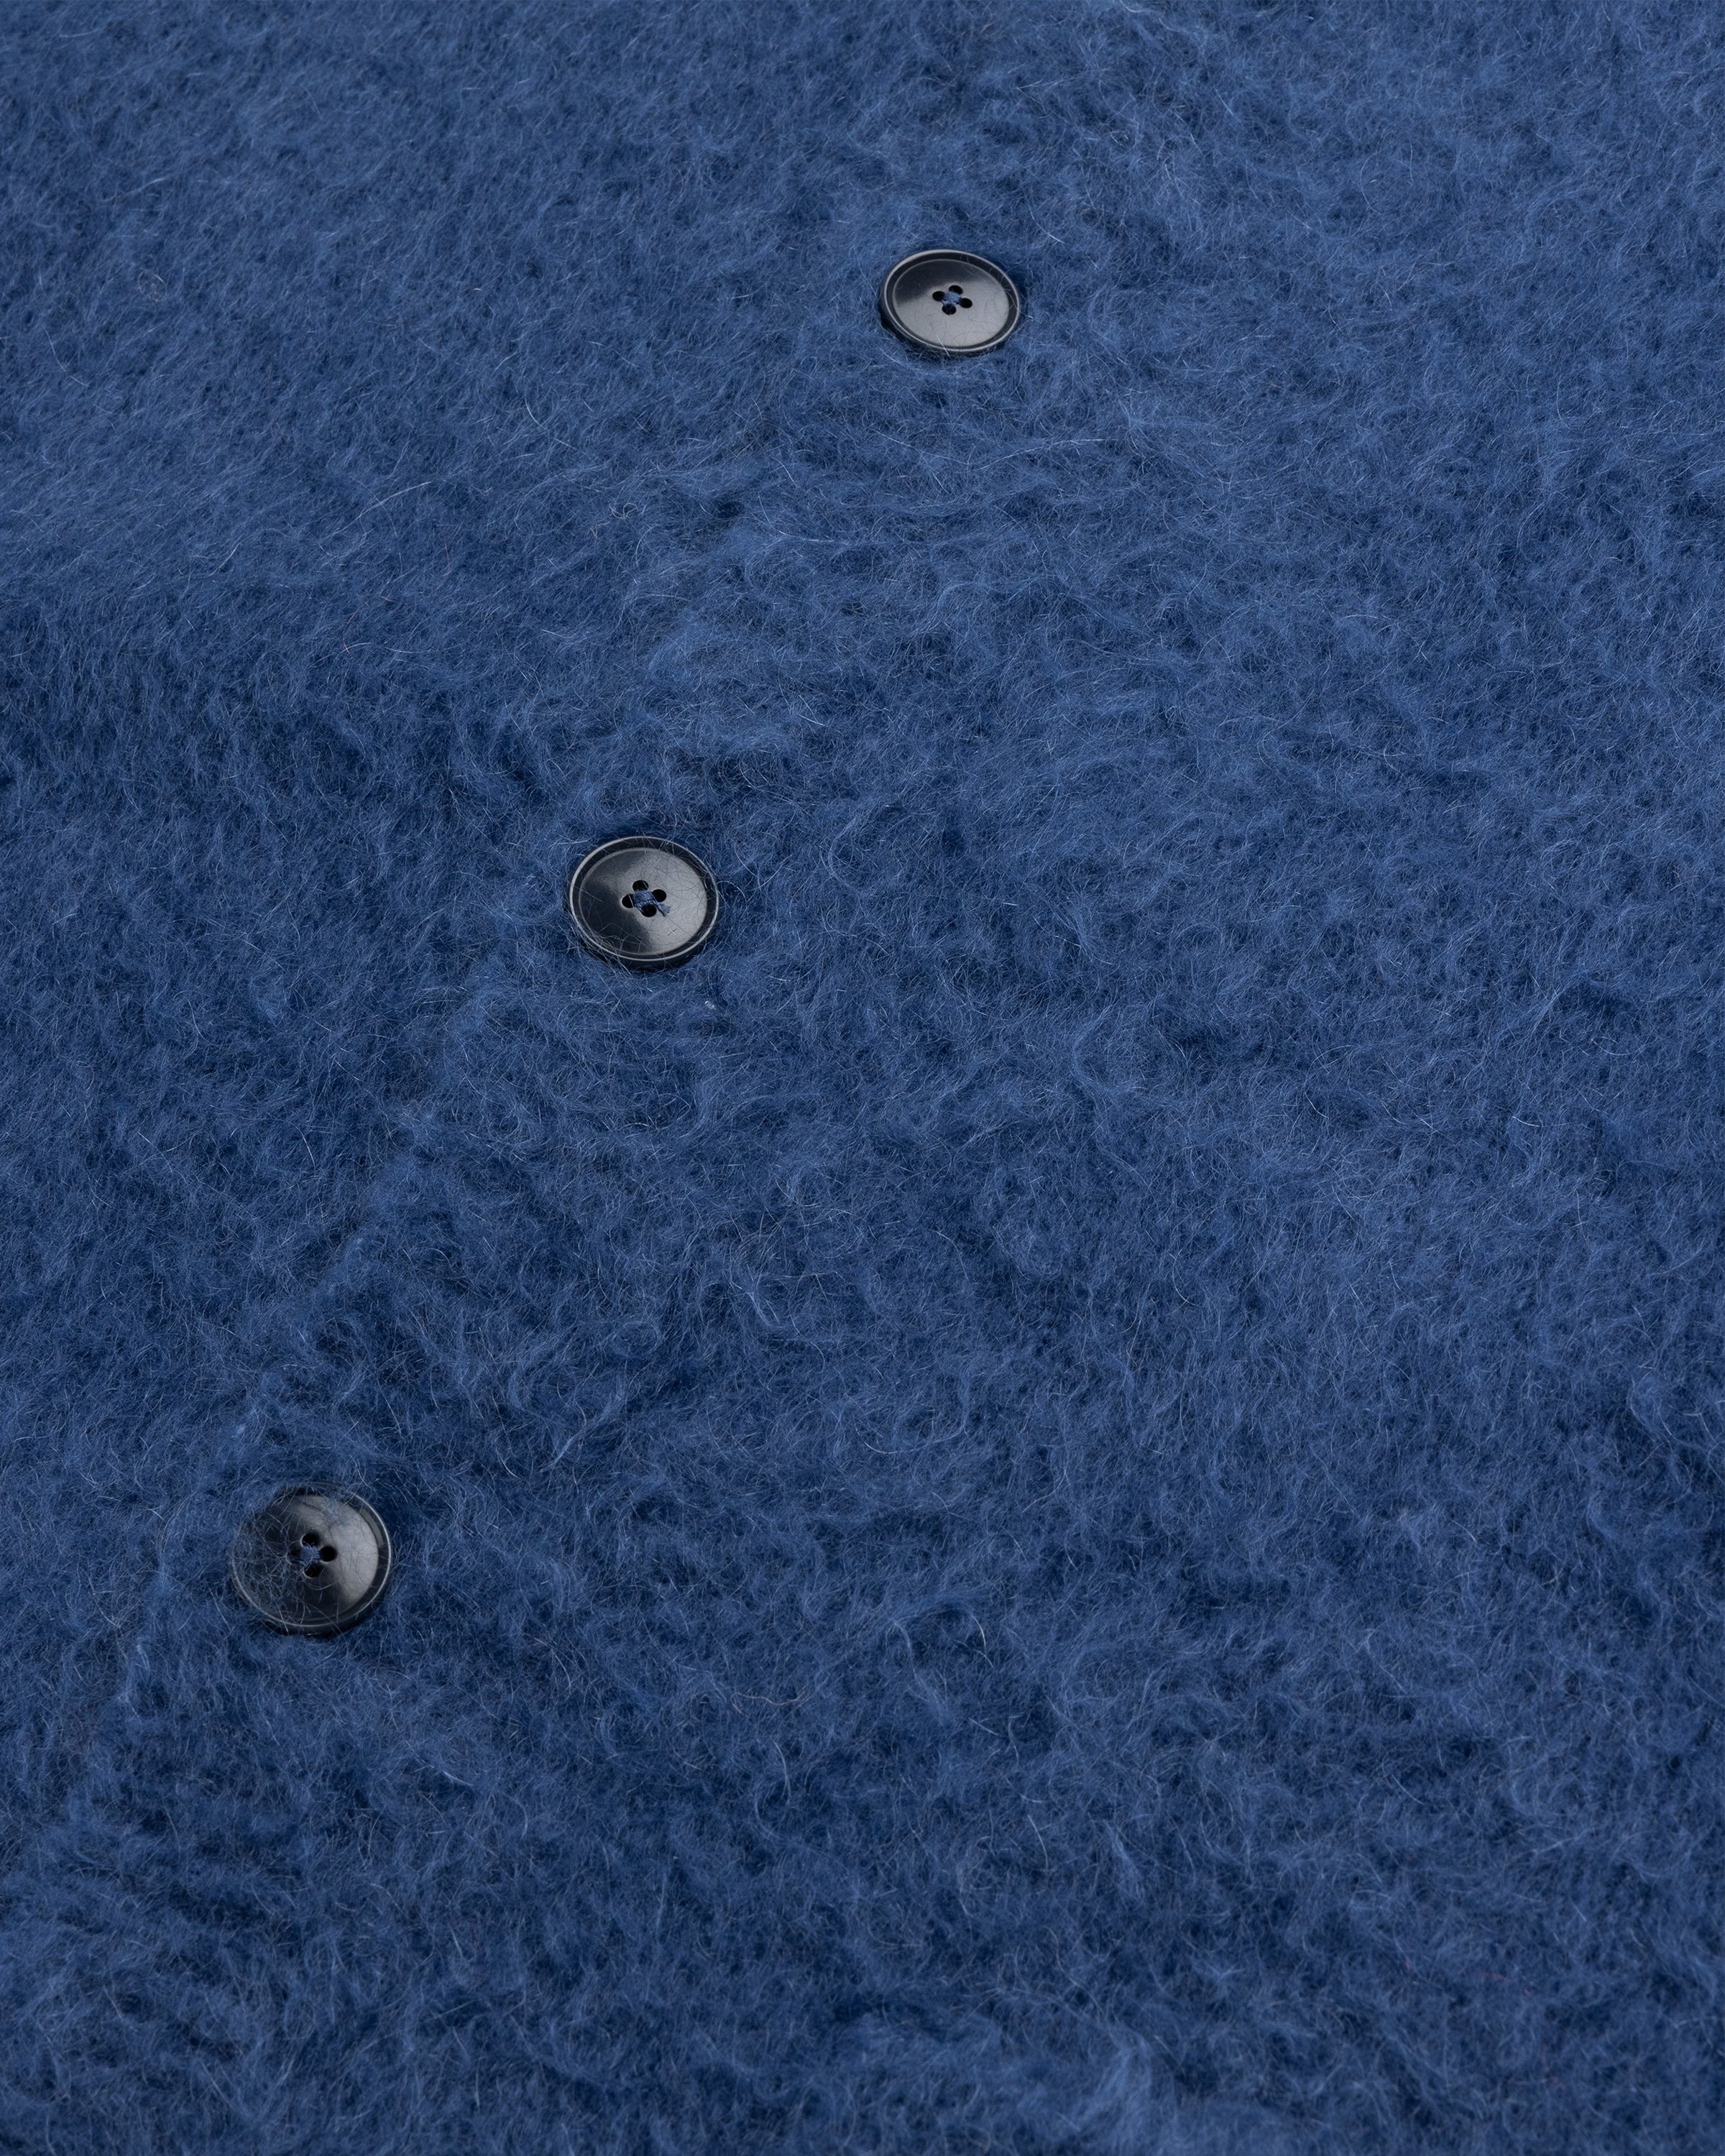 Acne Studios - Brushed Wool Cardigan Blue - Clothing - Blue - Image 5